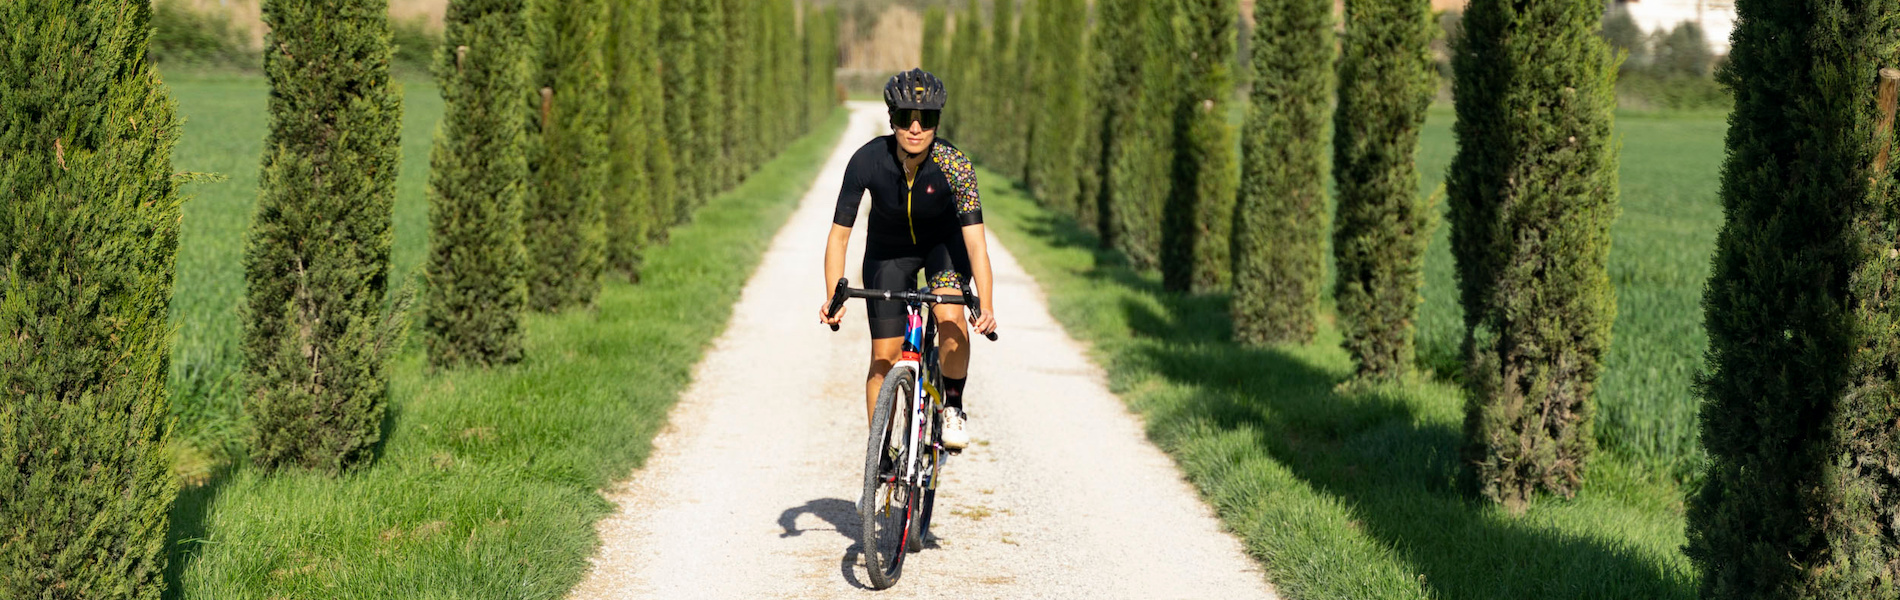 In bici, in Toscana